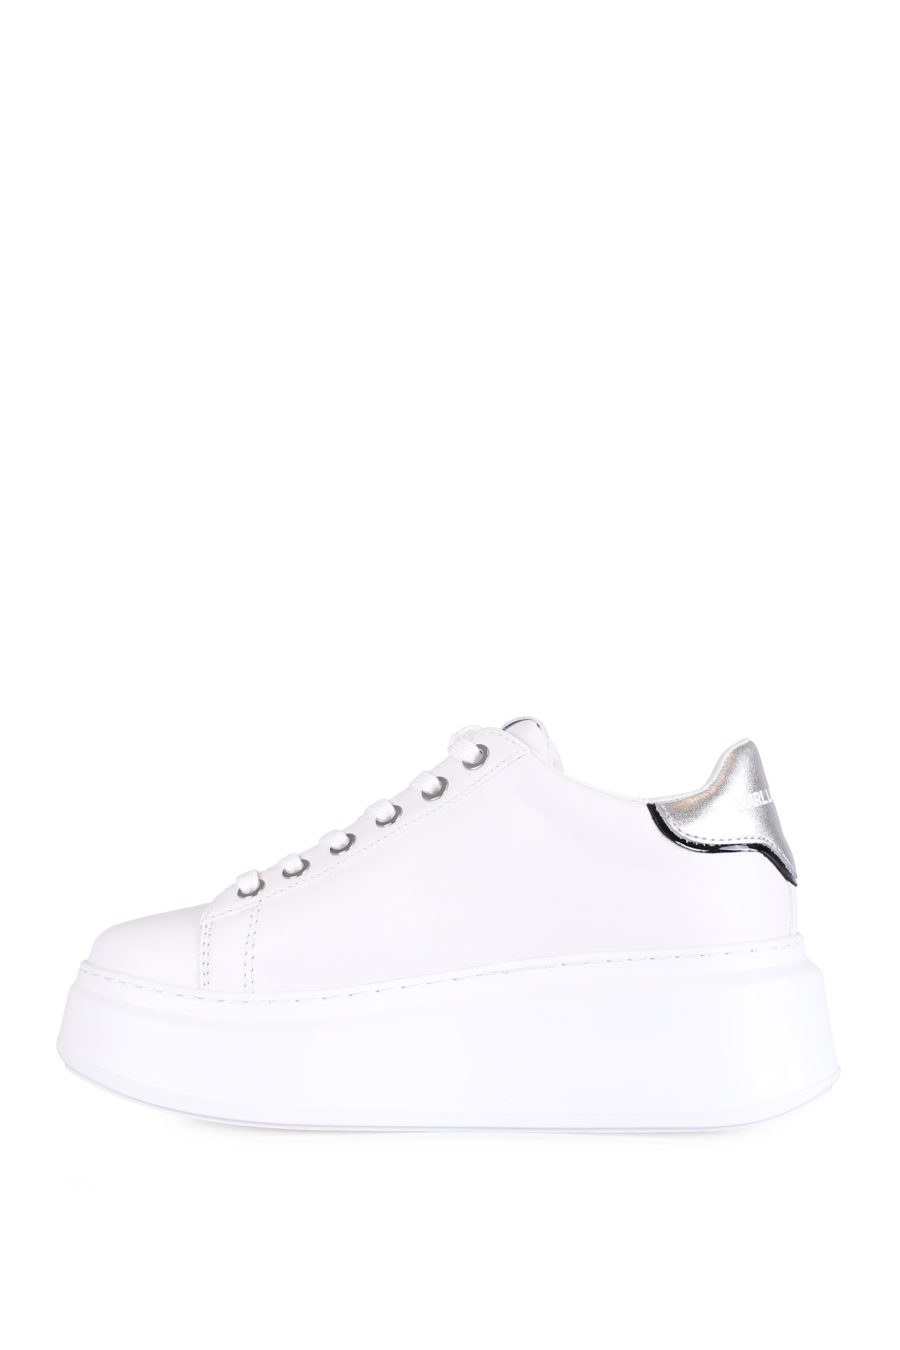 Zapatillas blancas con suela alta y logo de la marca - IMG 0725